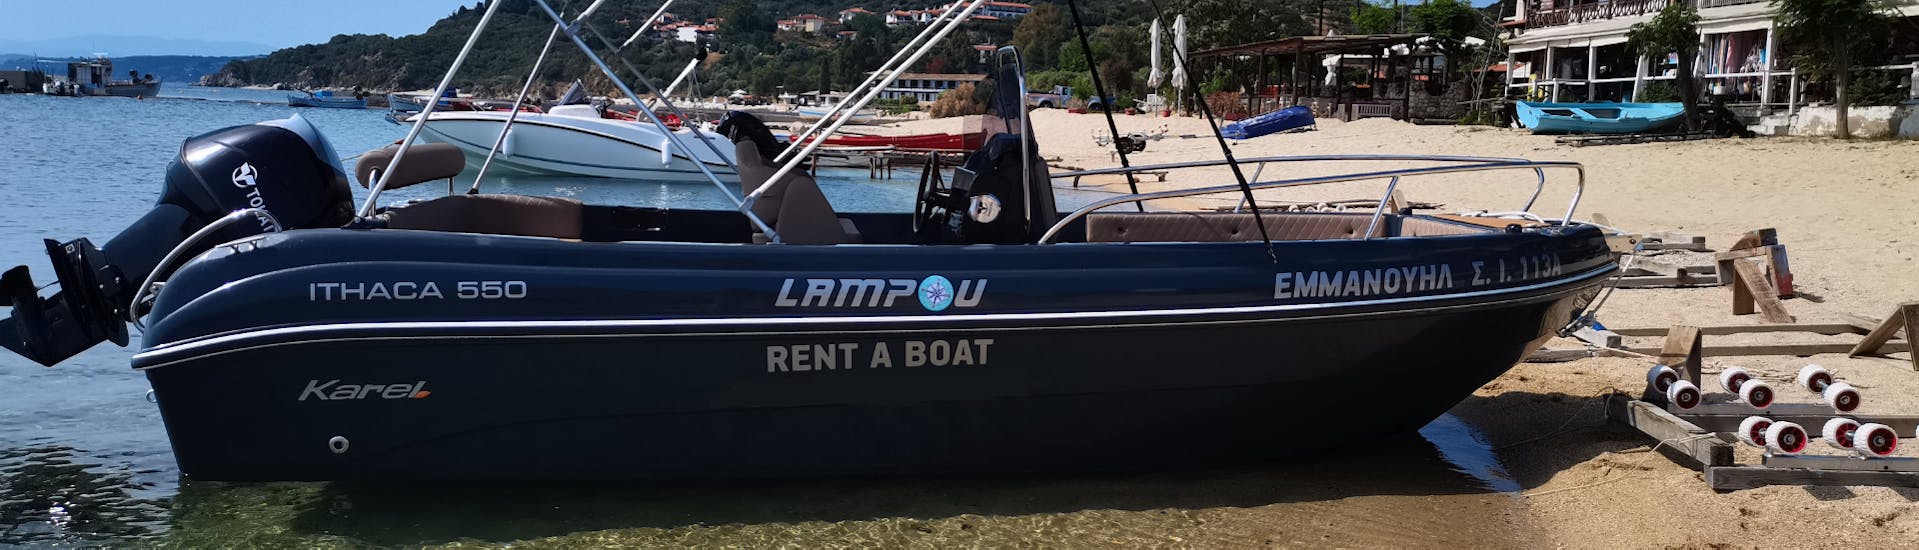 Notre bateau pour 8 personnes vous attend lors de la Location de bateau à Ouranoupoli (jusqu'à 8 personnes) sans Permis avec Rent a Boat Lampou.